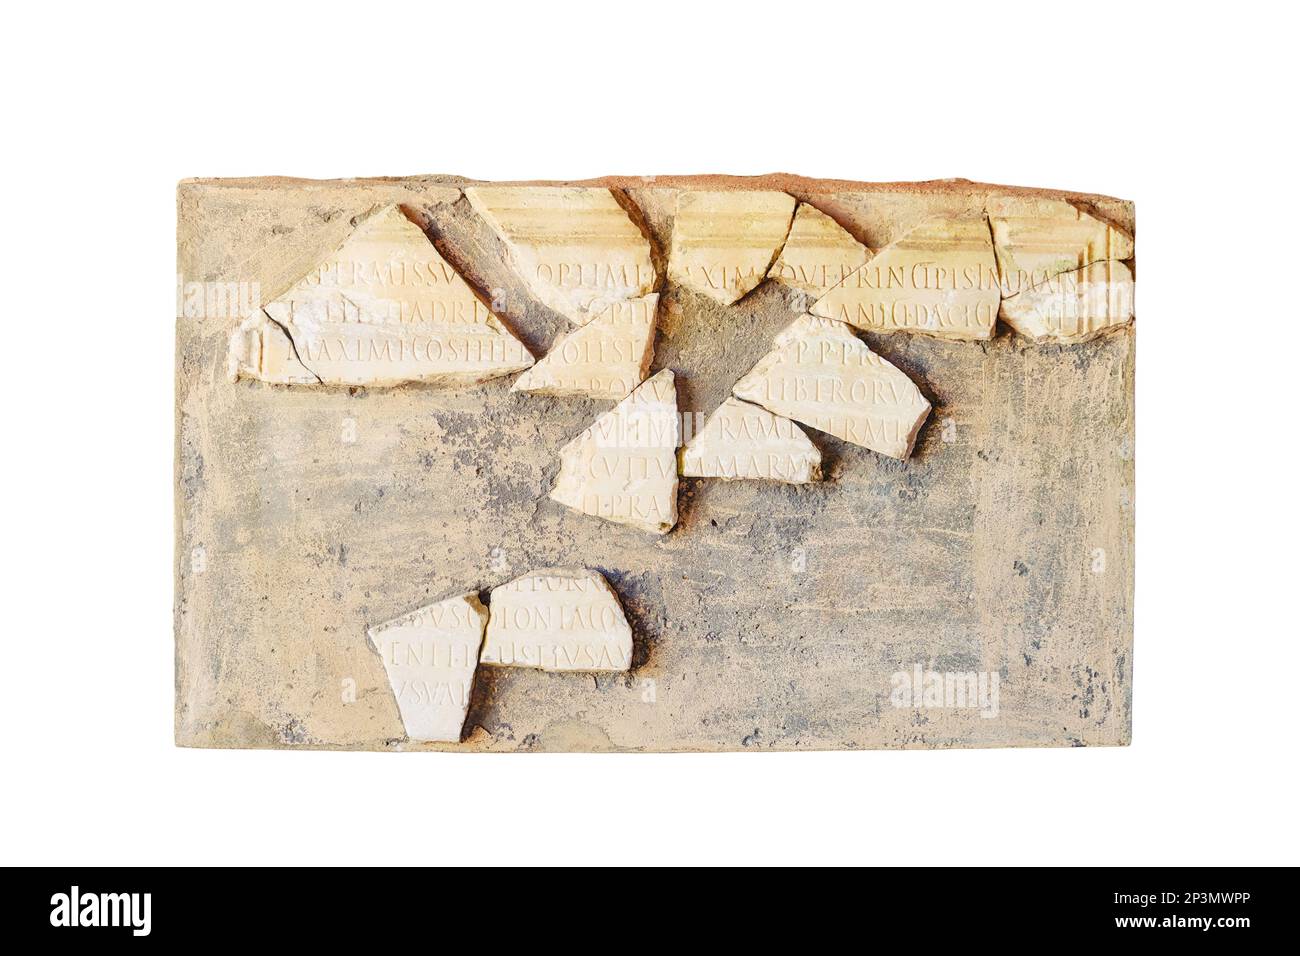 Scheda con lettere latine in termini del sito archeologico Anthony, isolato su uno sfondo bianco. Le rovine tempi antichi delle guerre romane con Carthag Foto Stock